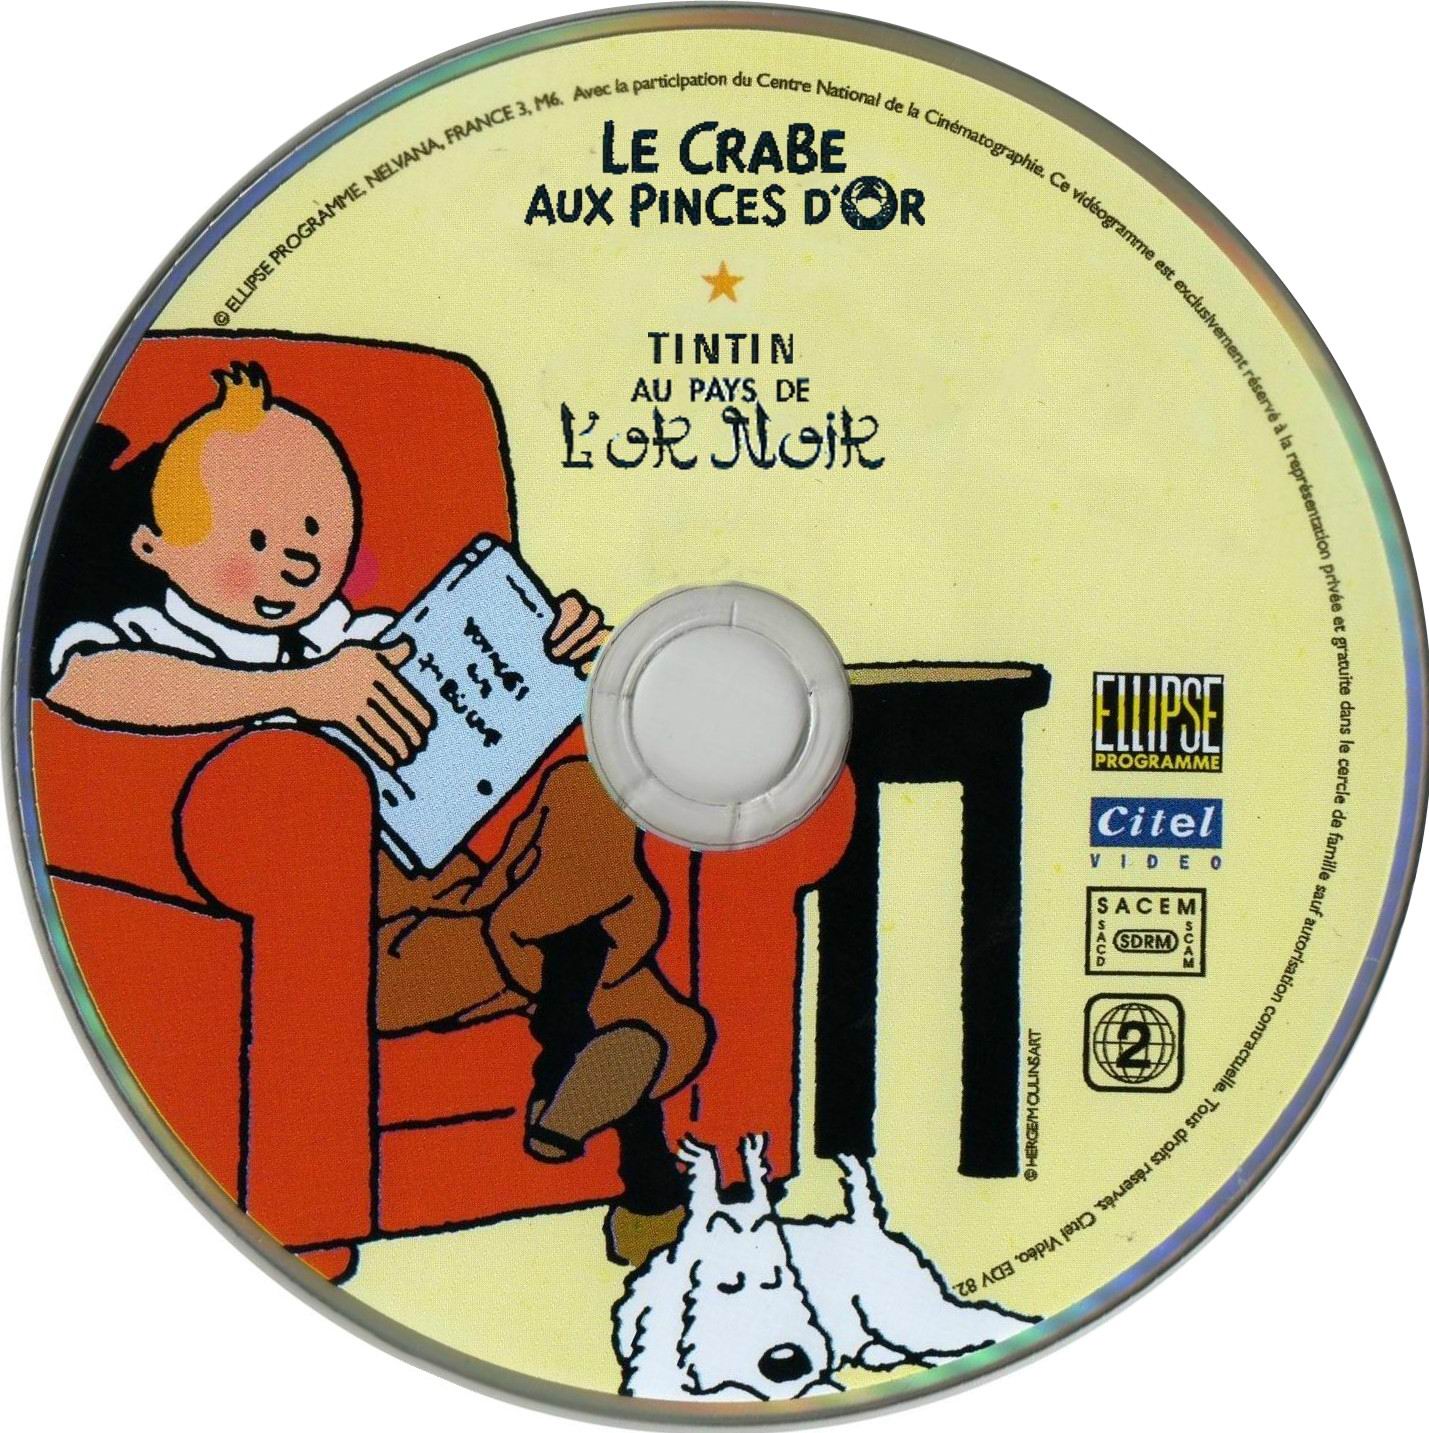 Tintin aux pays de l or noir + Le crabe aux pinces d or